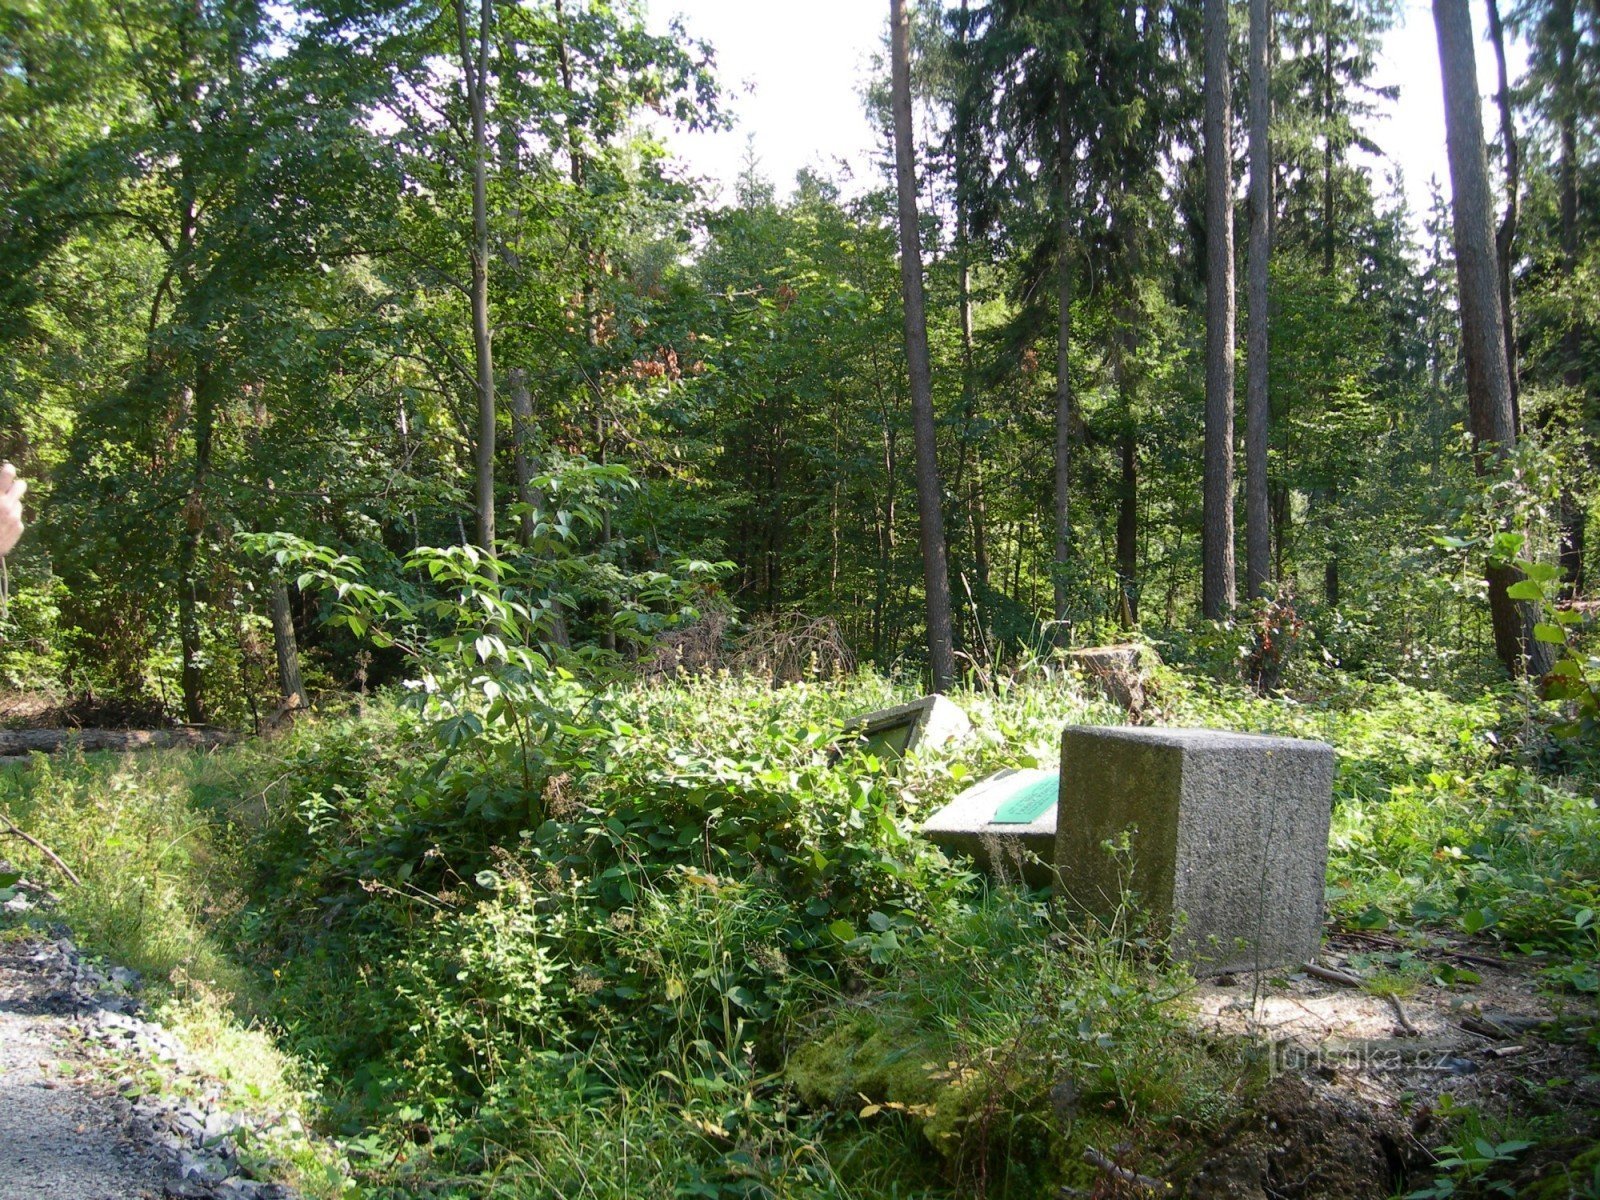 monumento Köhler